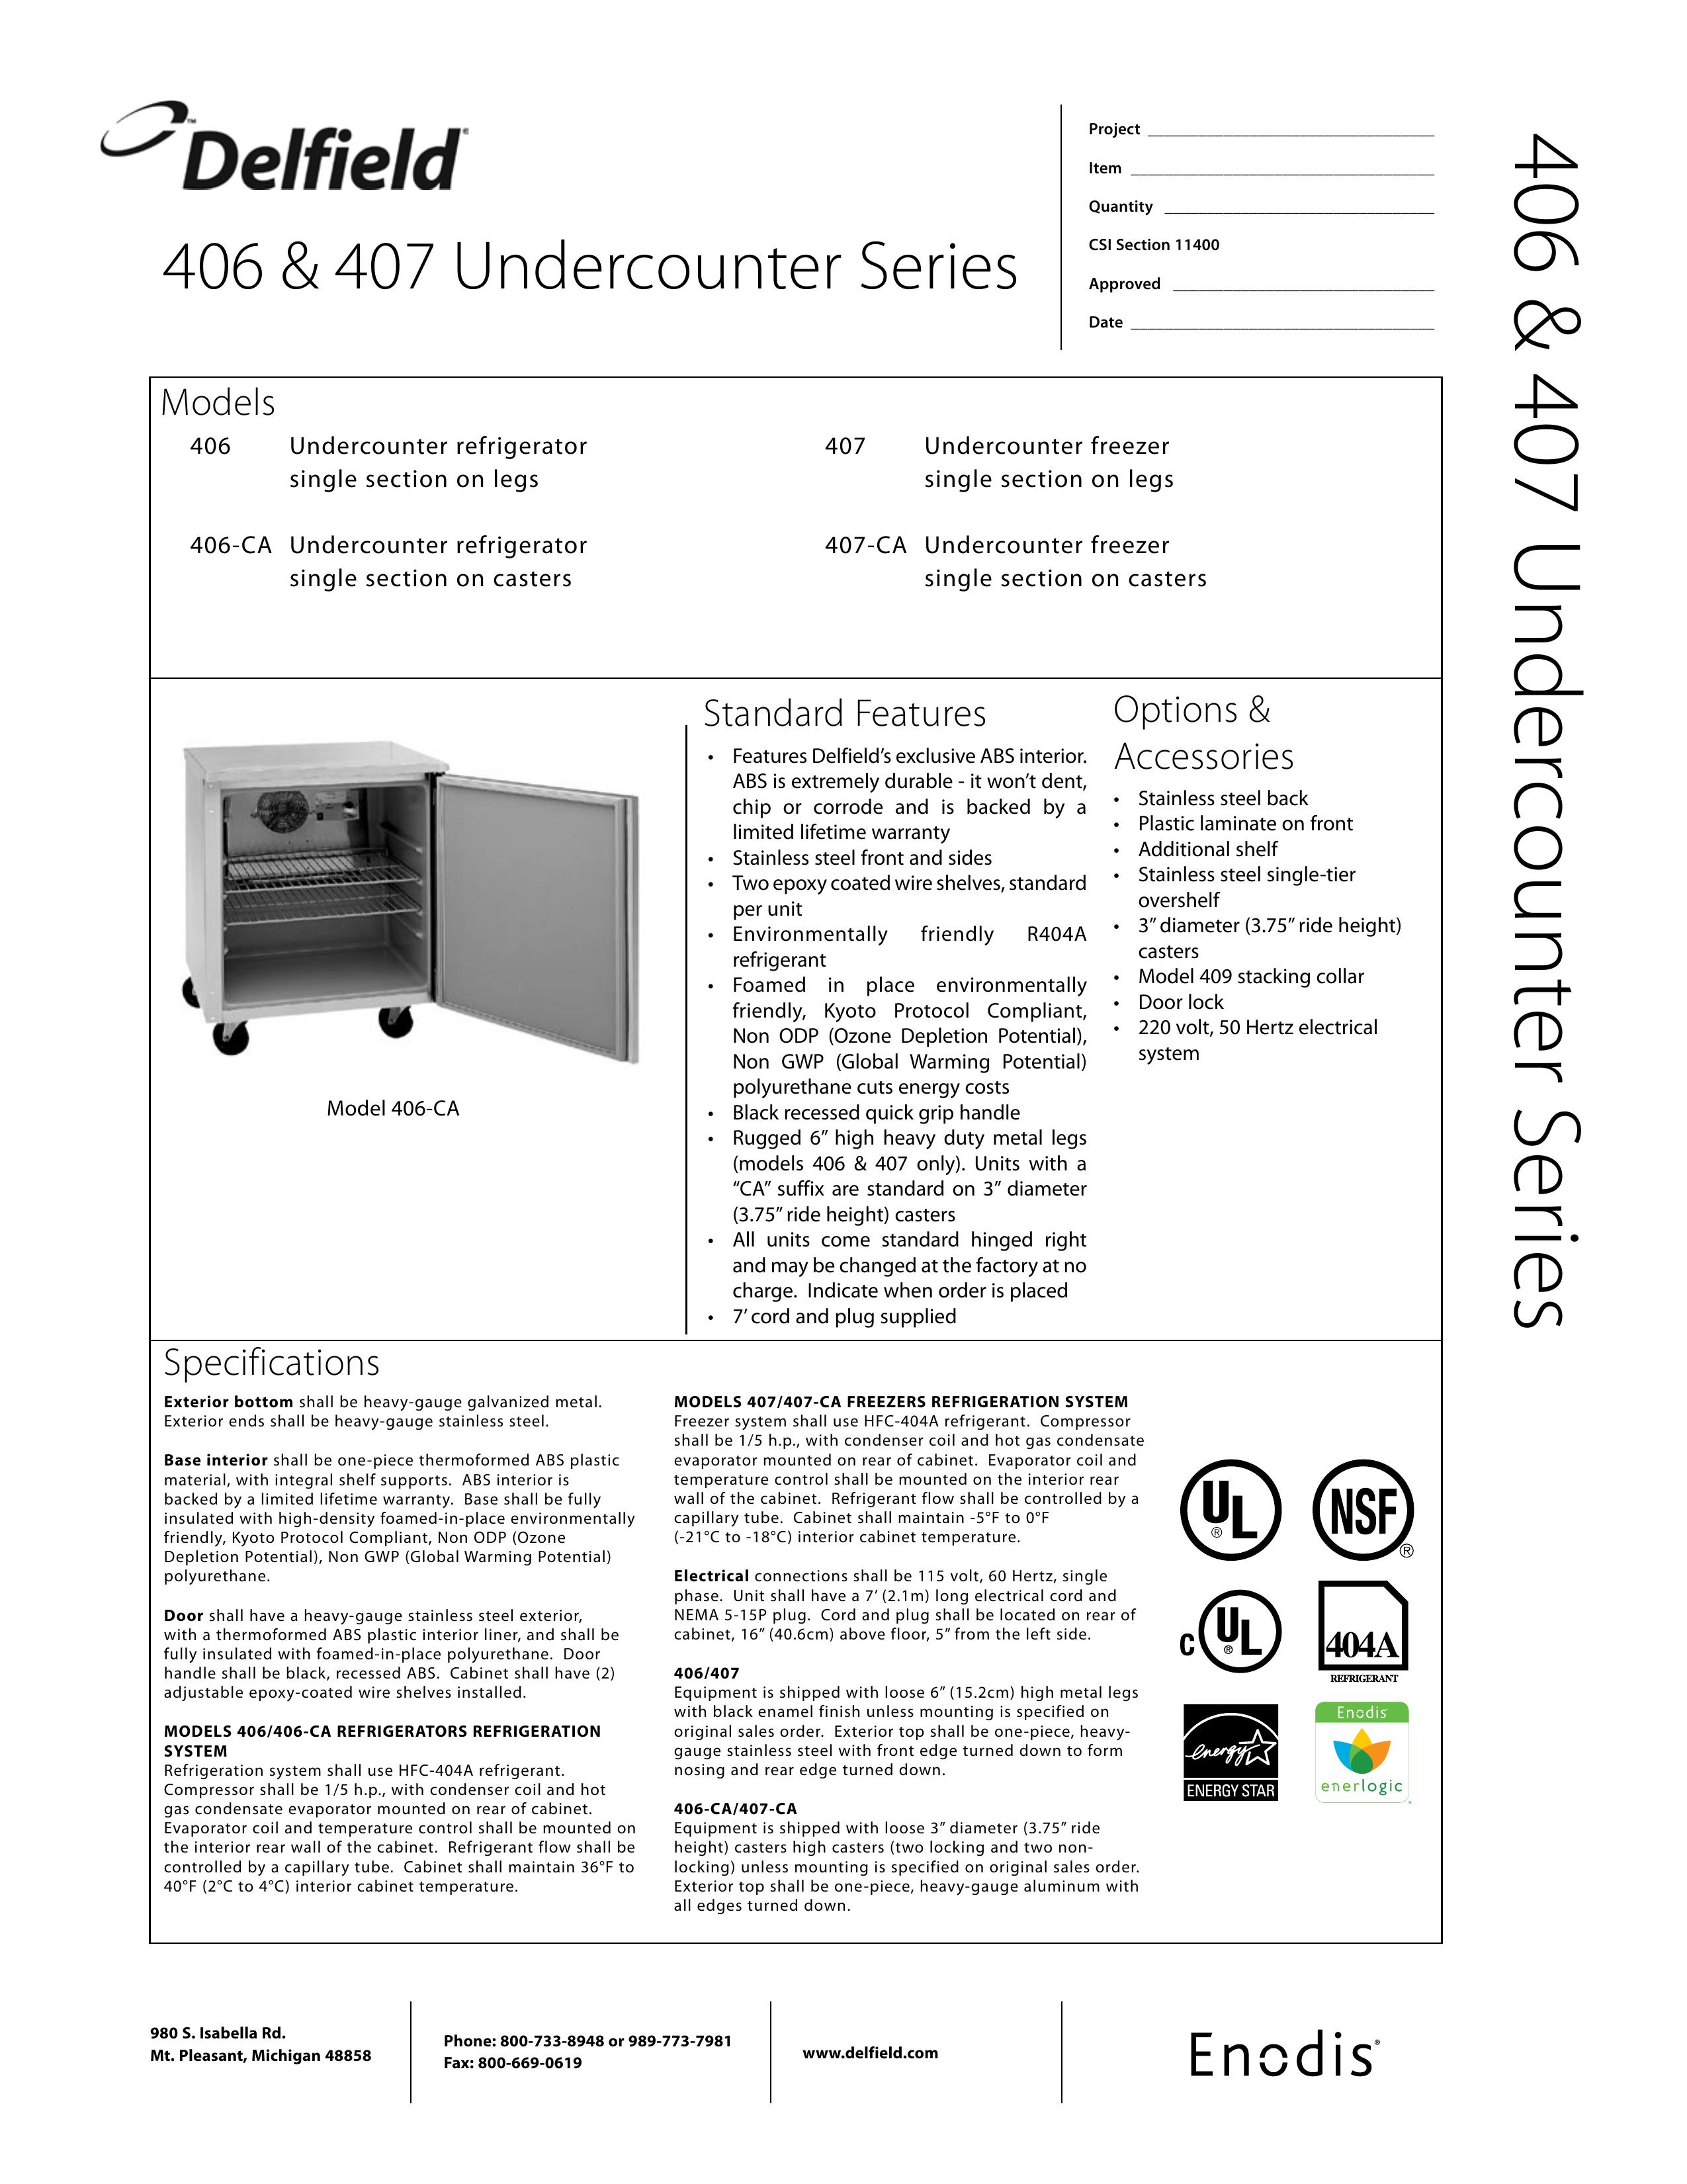 Delfield 406-CA Refrigerator User Manual